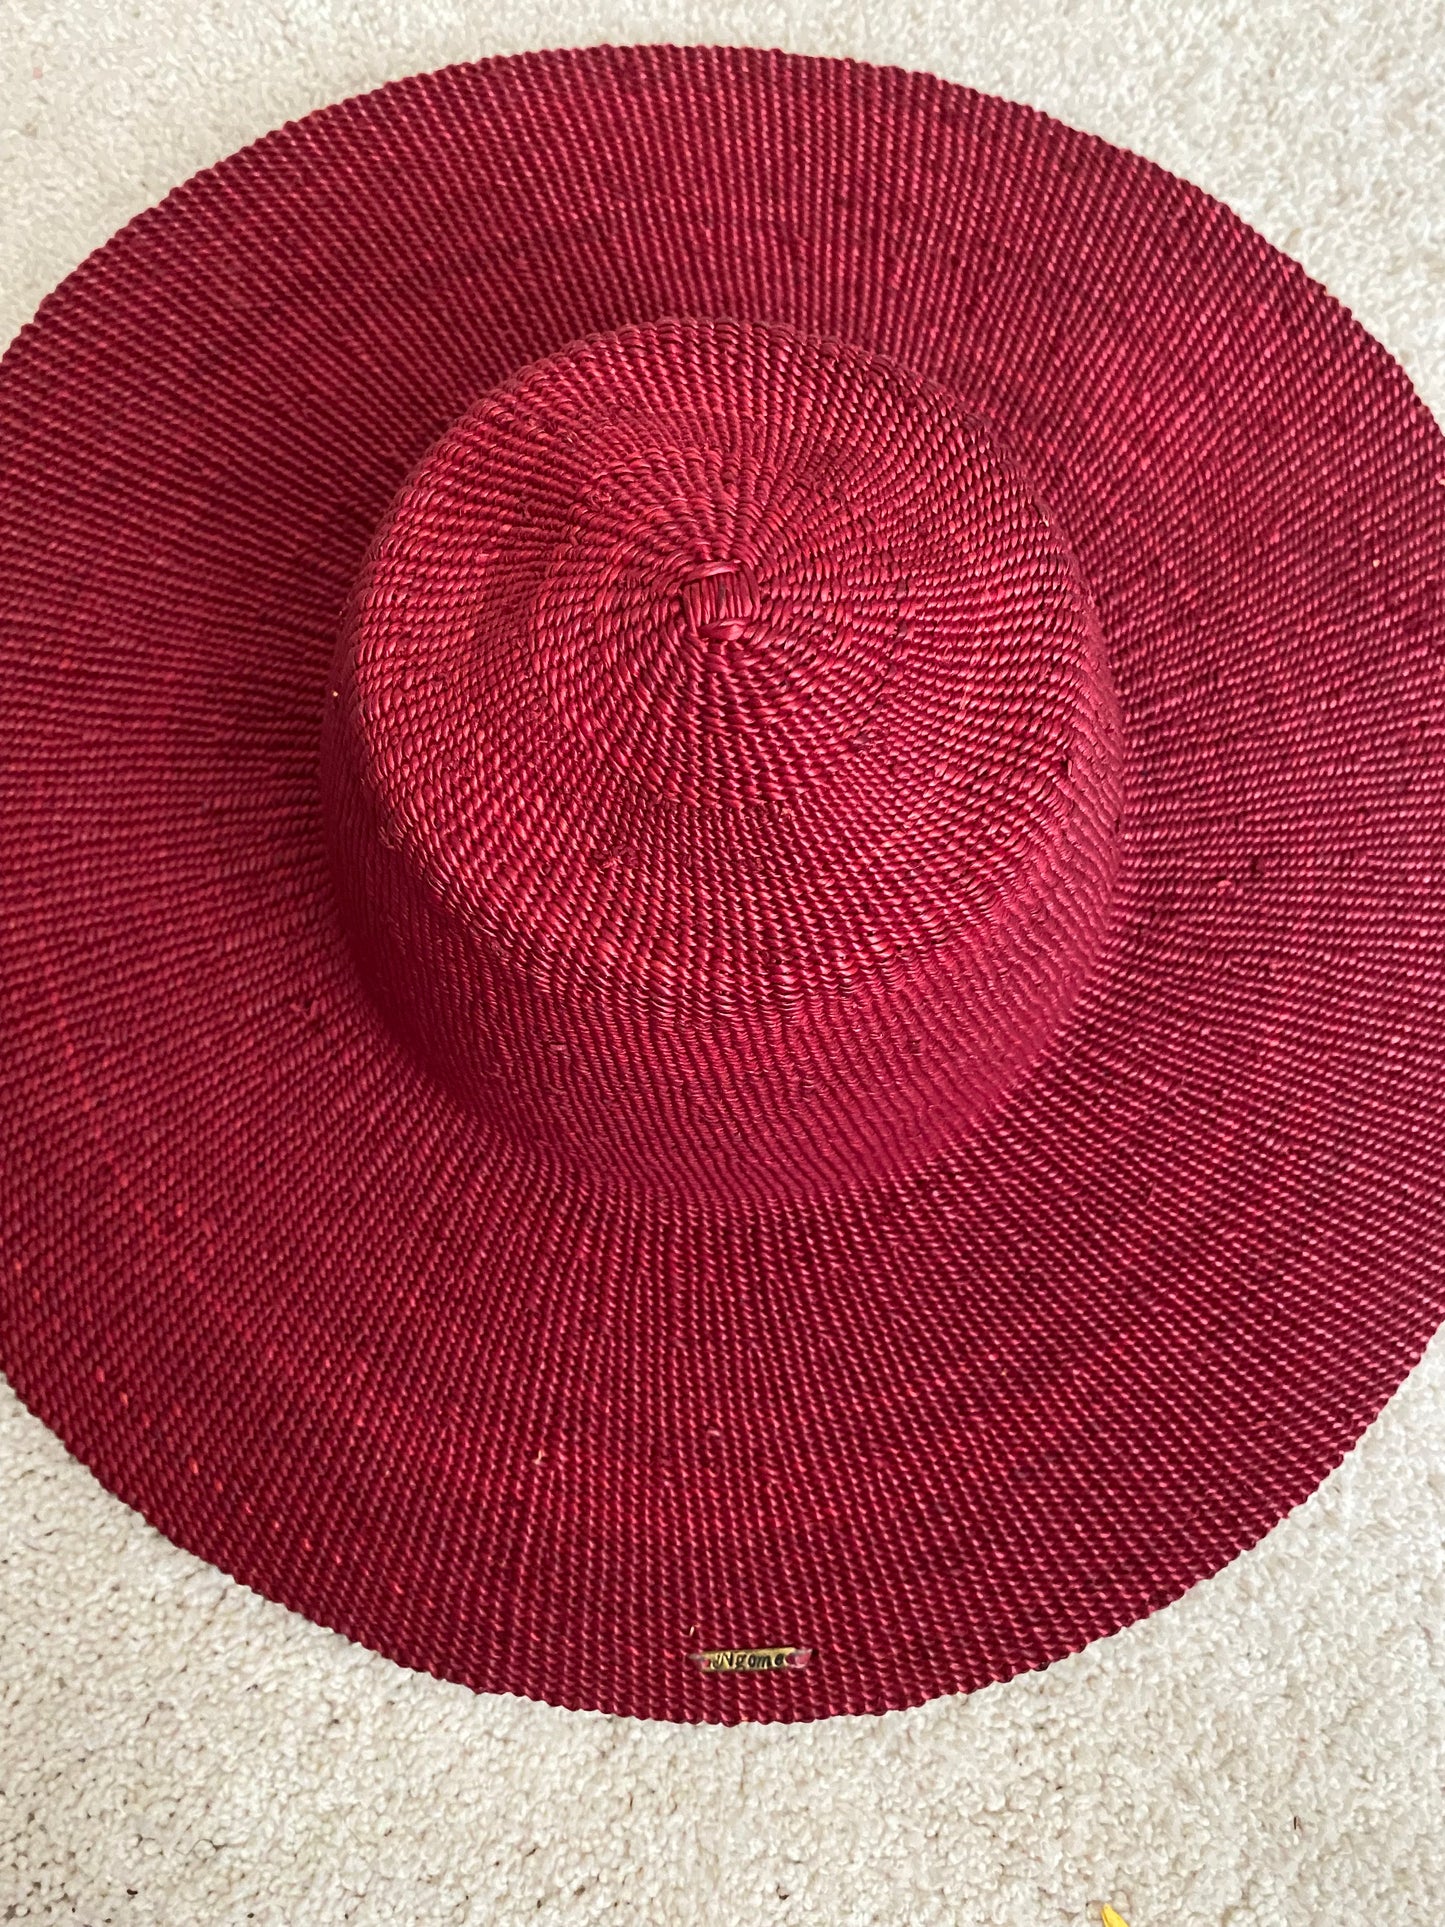 Oseye Hat